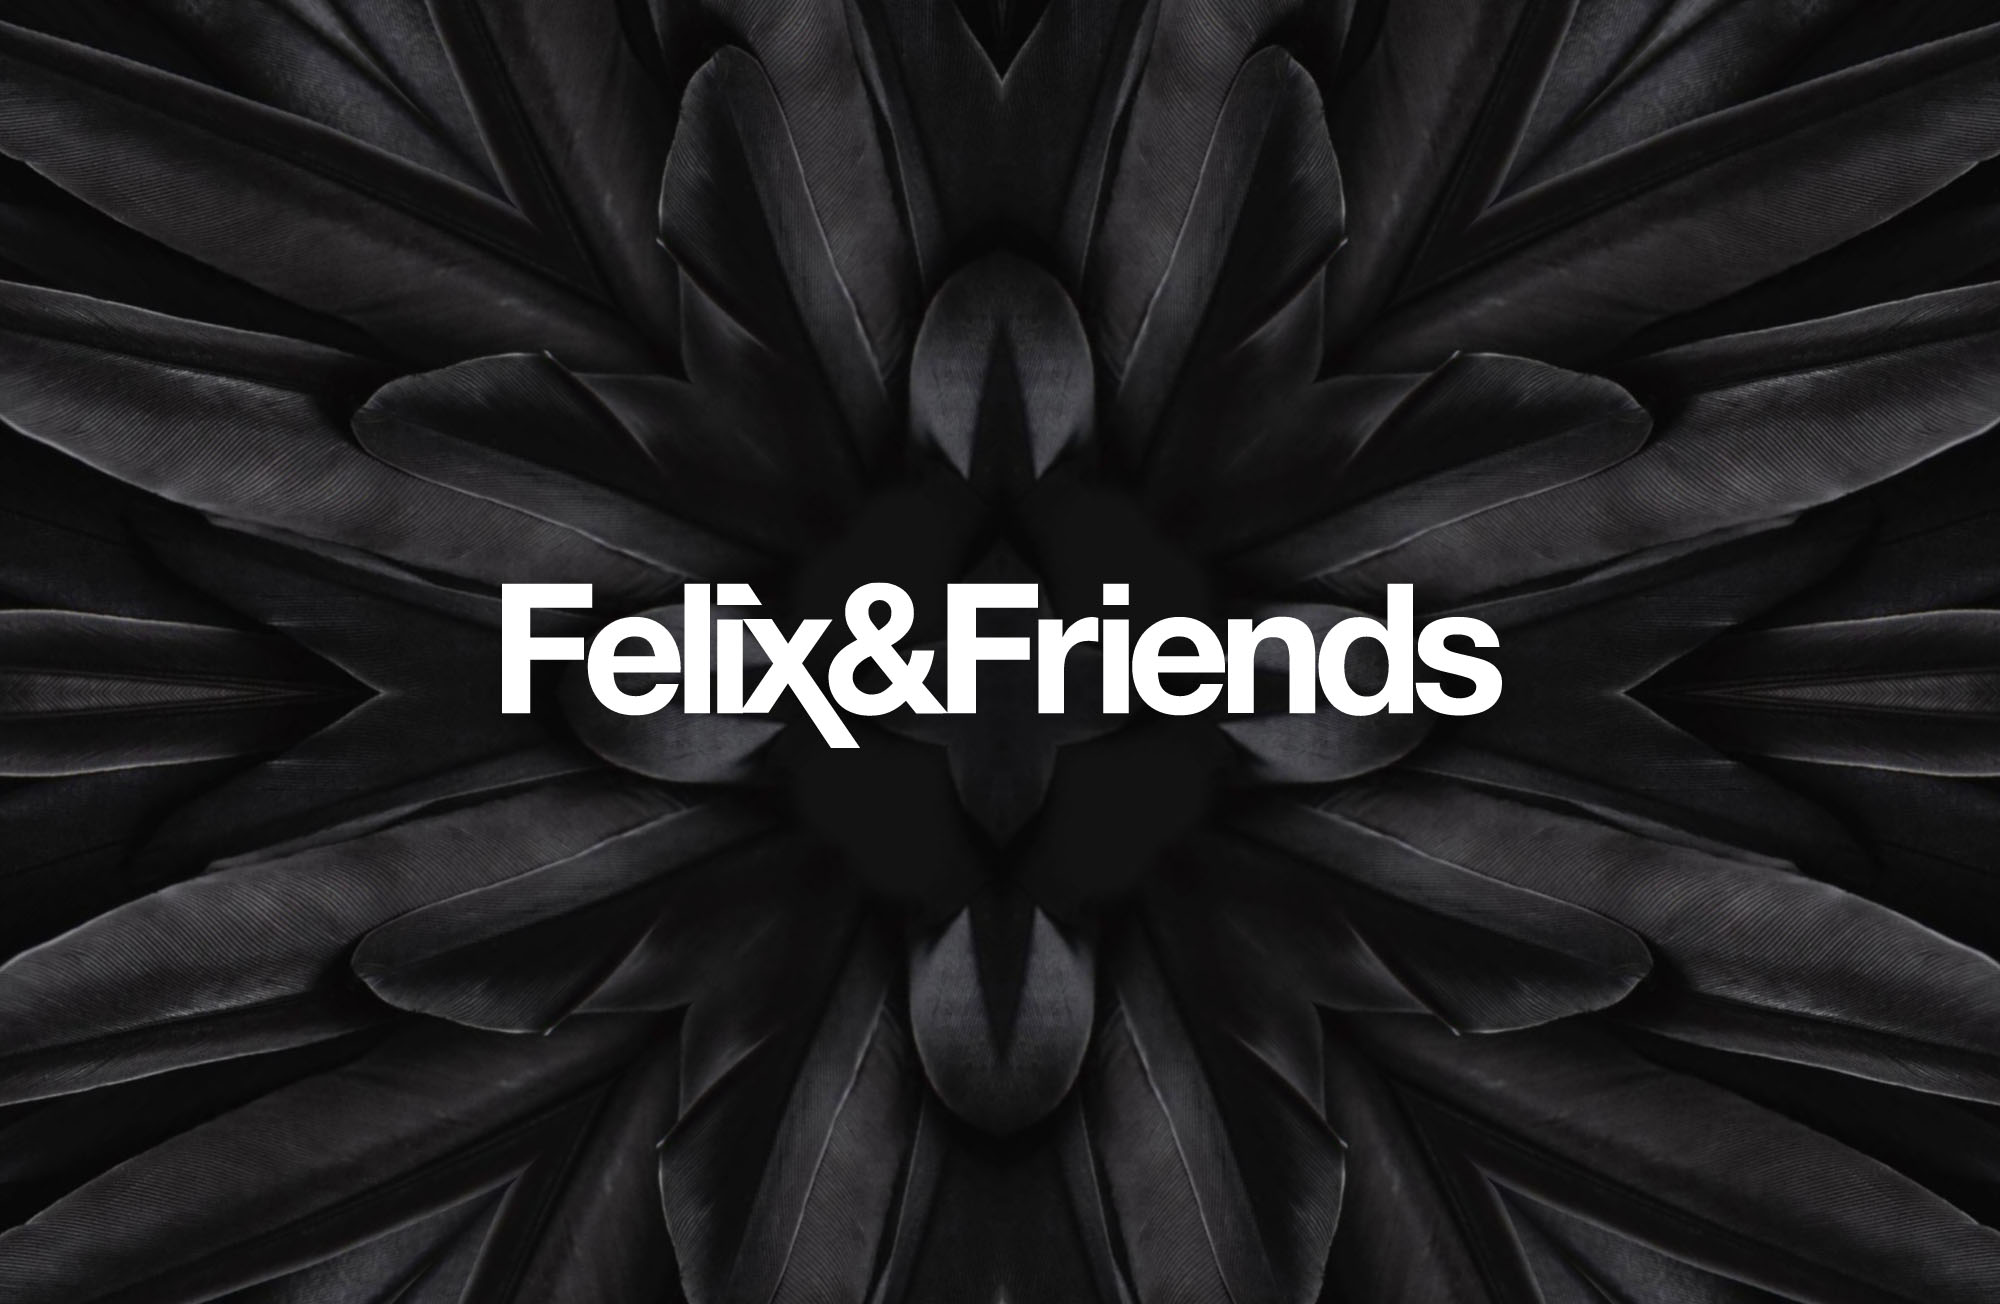 (c) Felixandfriends.com